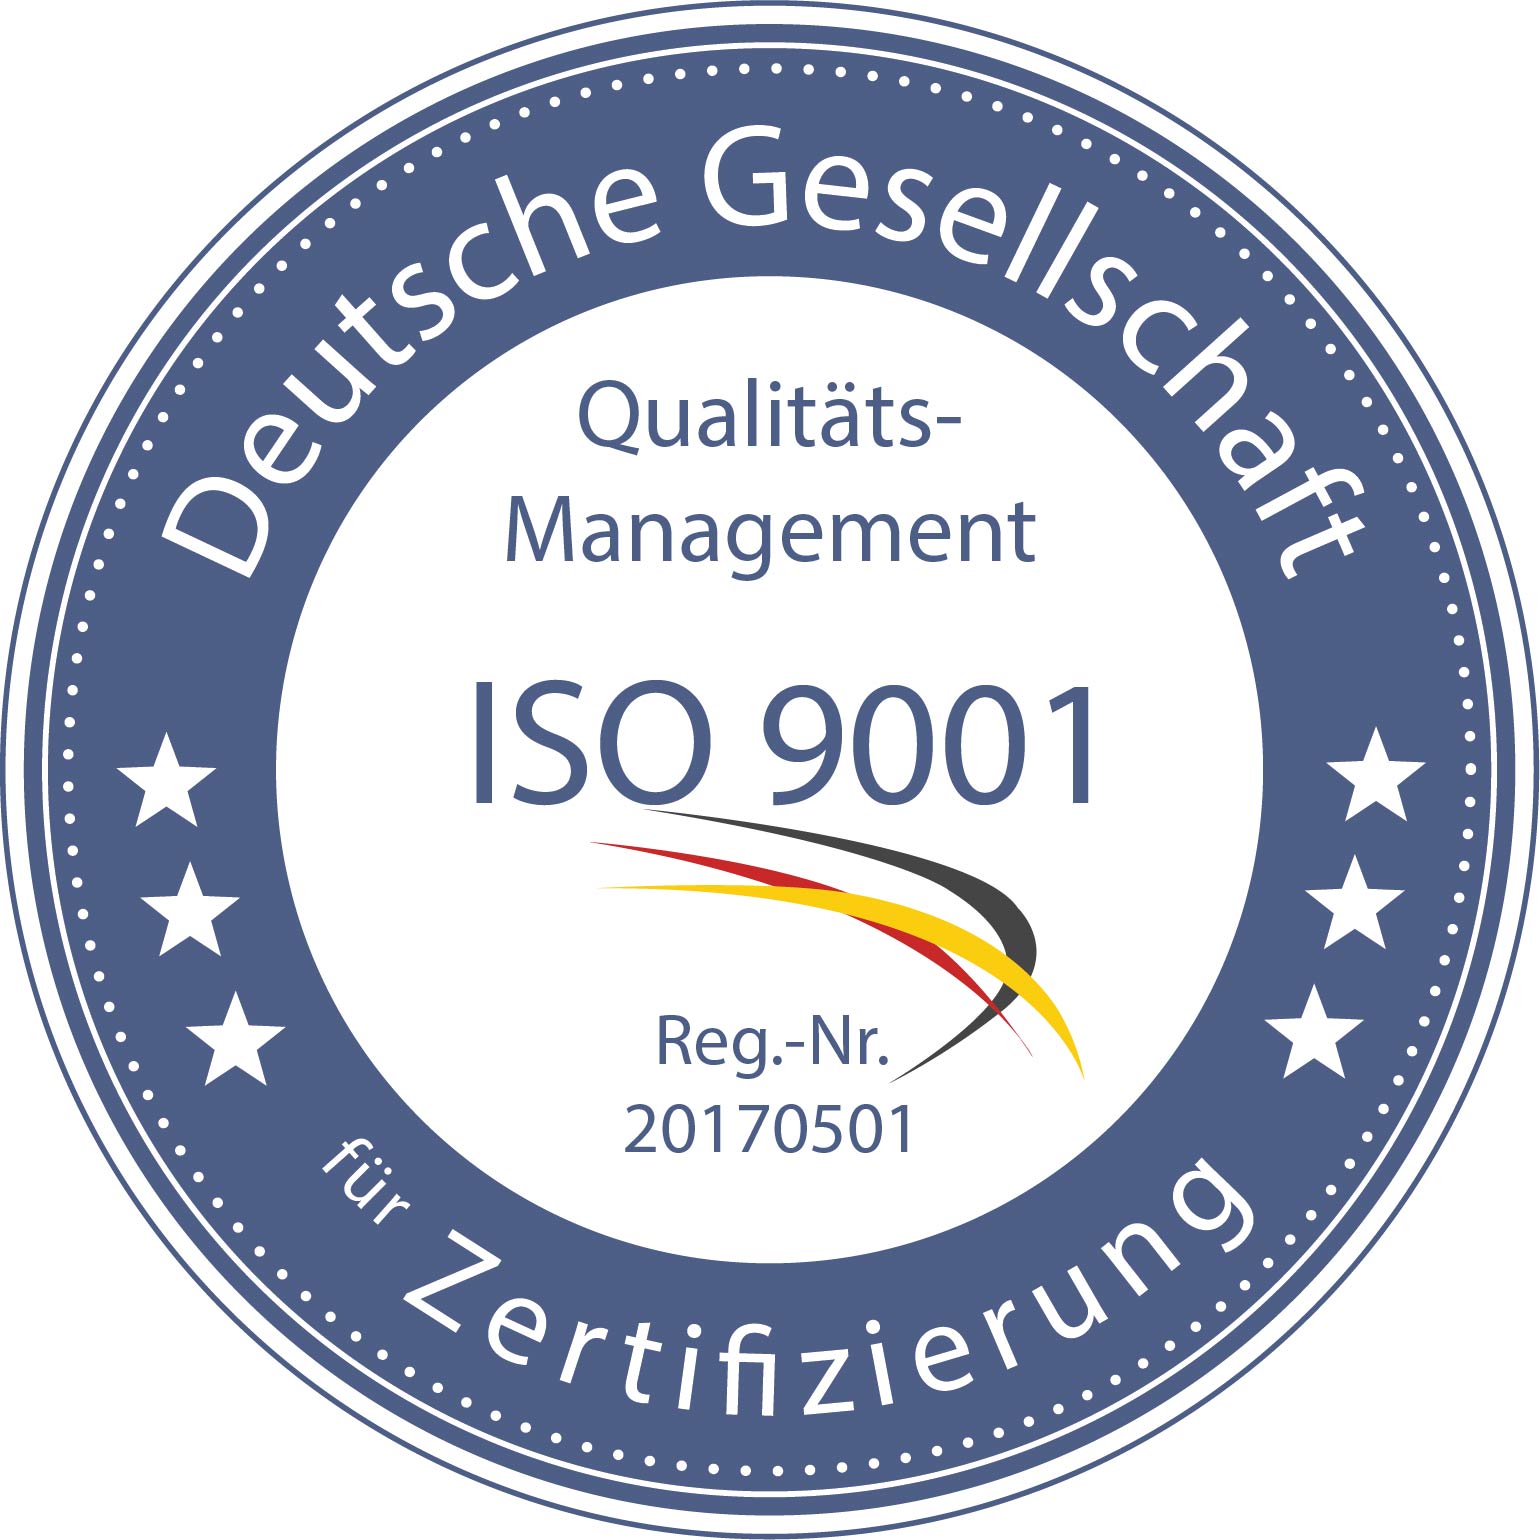 Qualitätsmanagement ISO 9001 - zertifizierte Leistungen